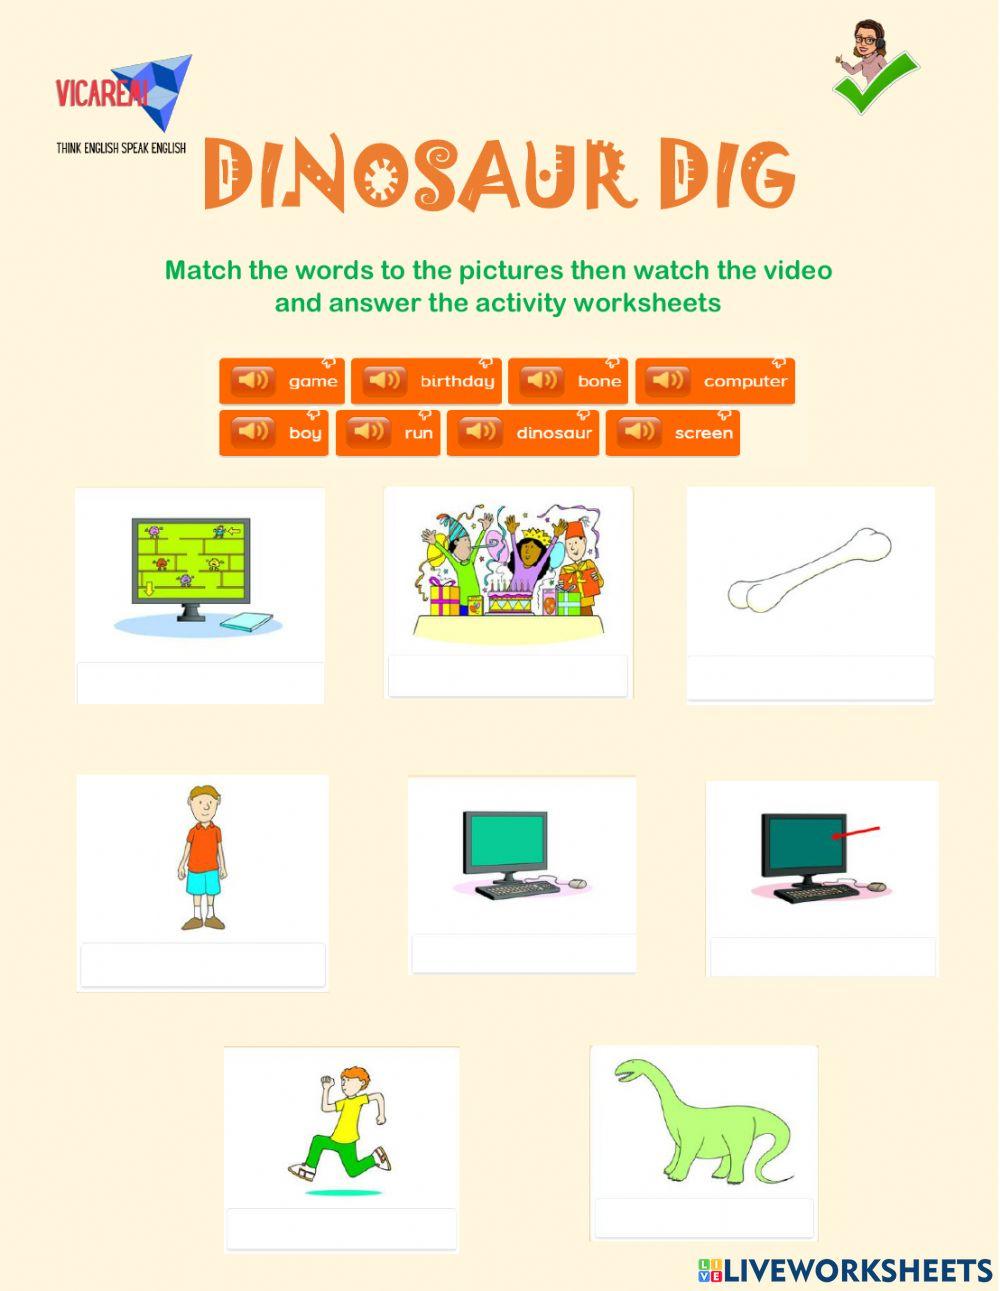 Dinosaur Dig